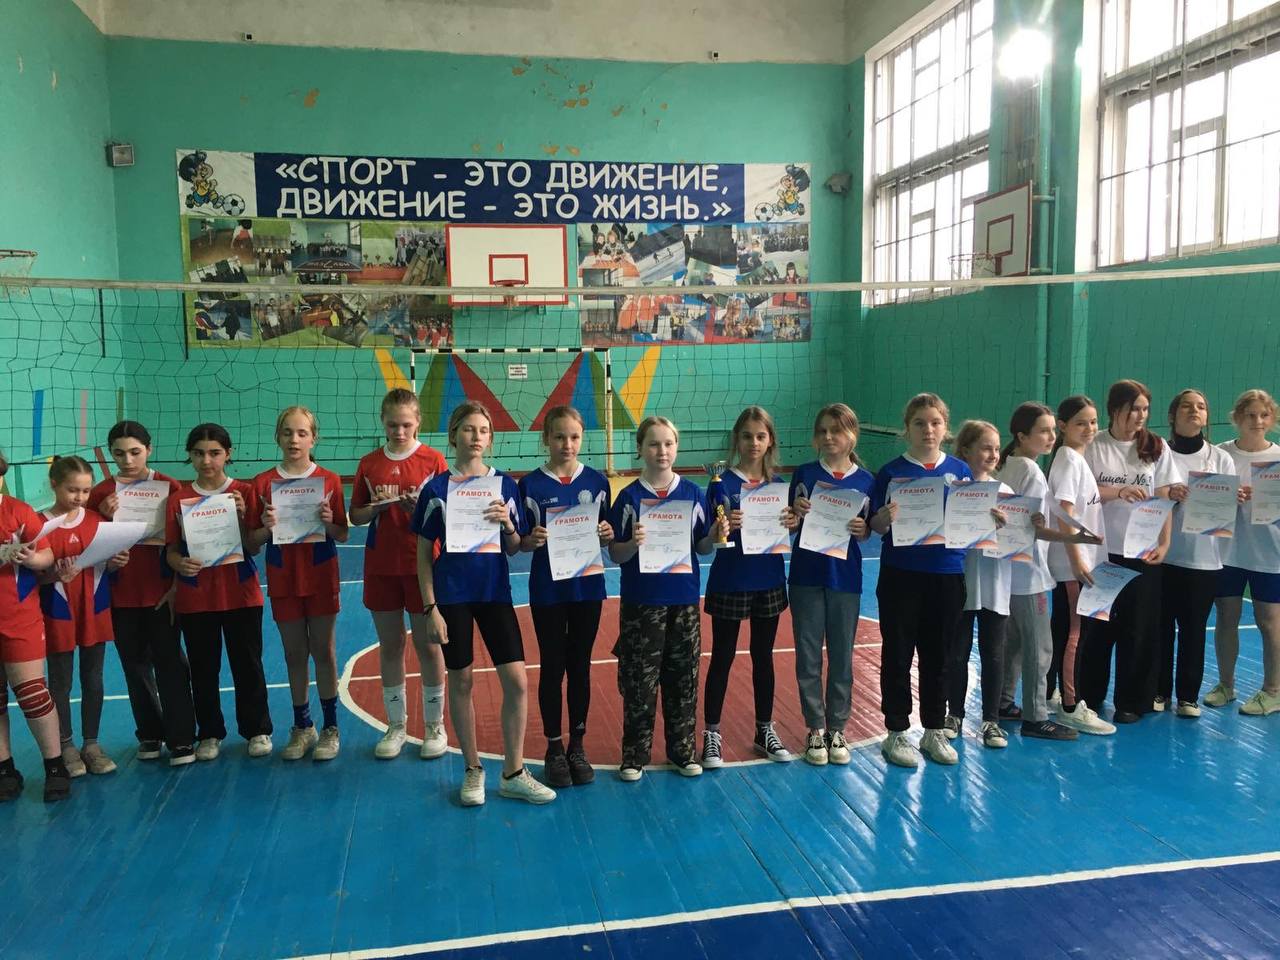 Команда девочек заняла 1 место в соревнованиях по пионерболу среди учащихся 5-х классов.